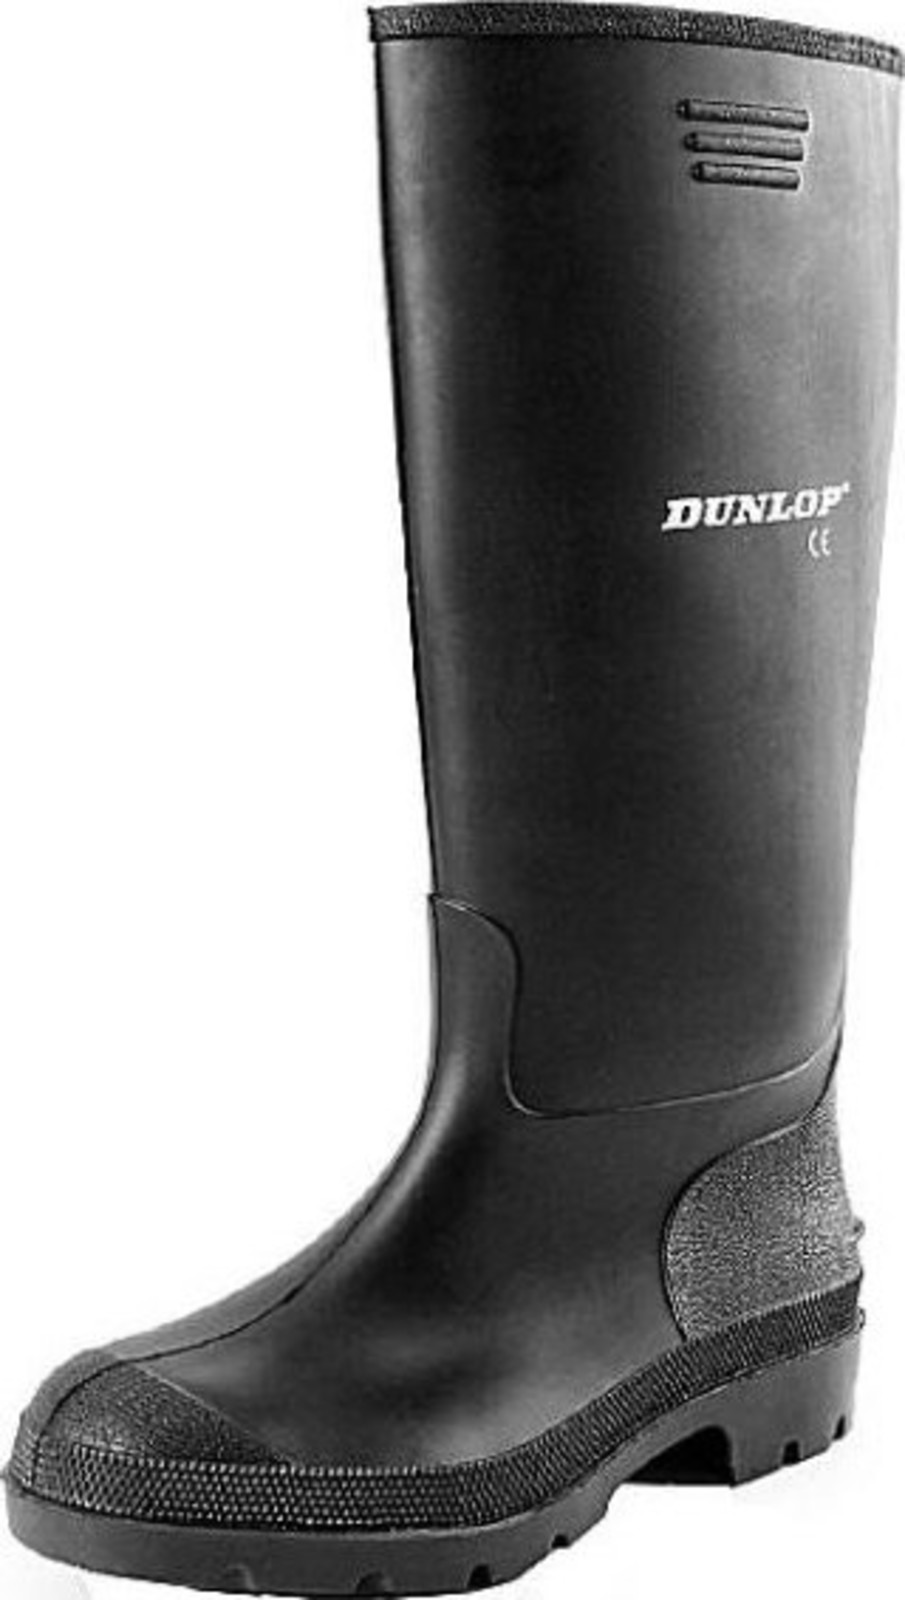 Gumáky Dunlop Preismeister PVC - veľkosť: 45, farba: čierna